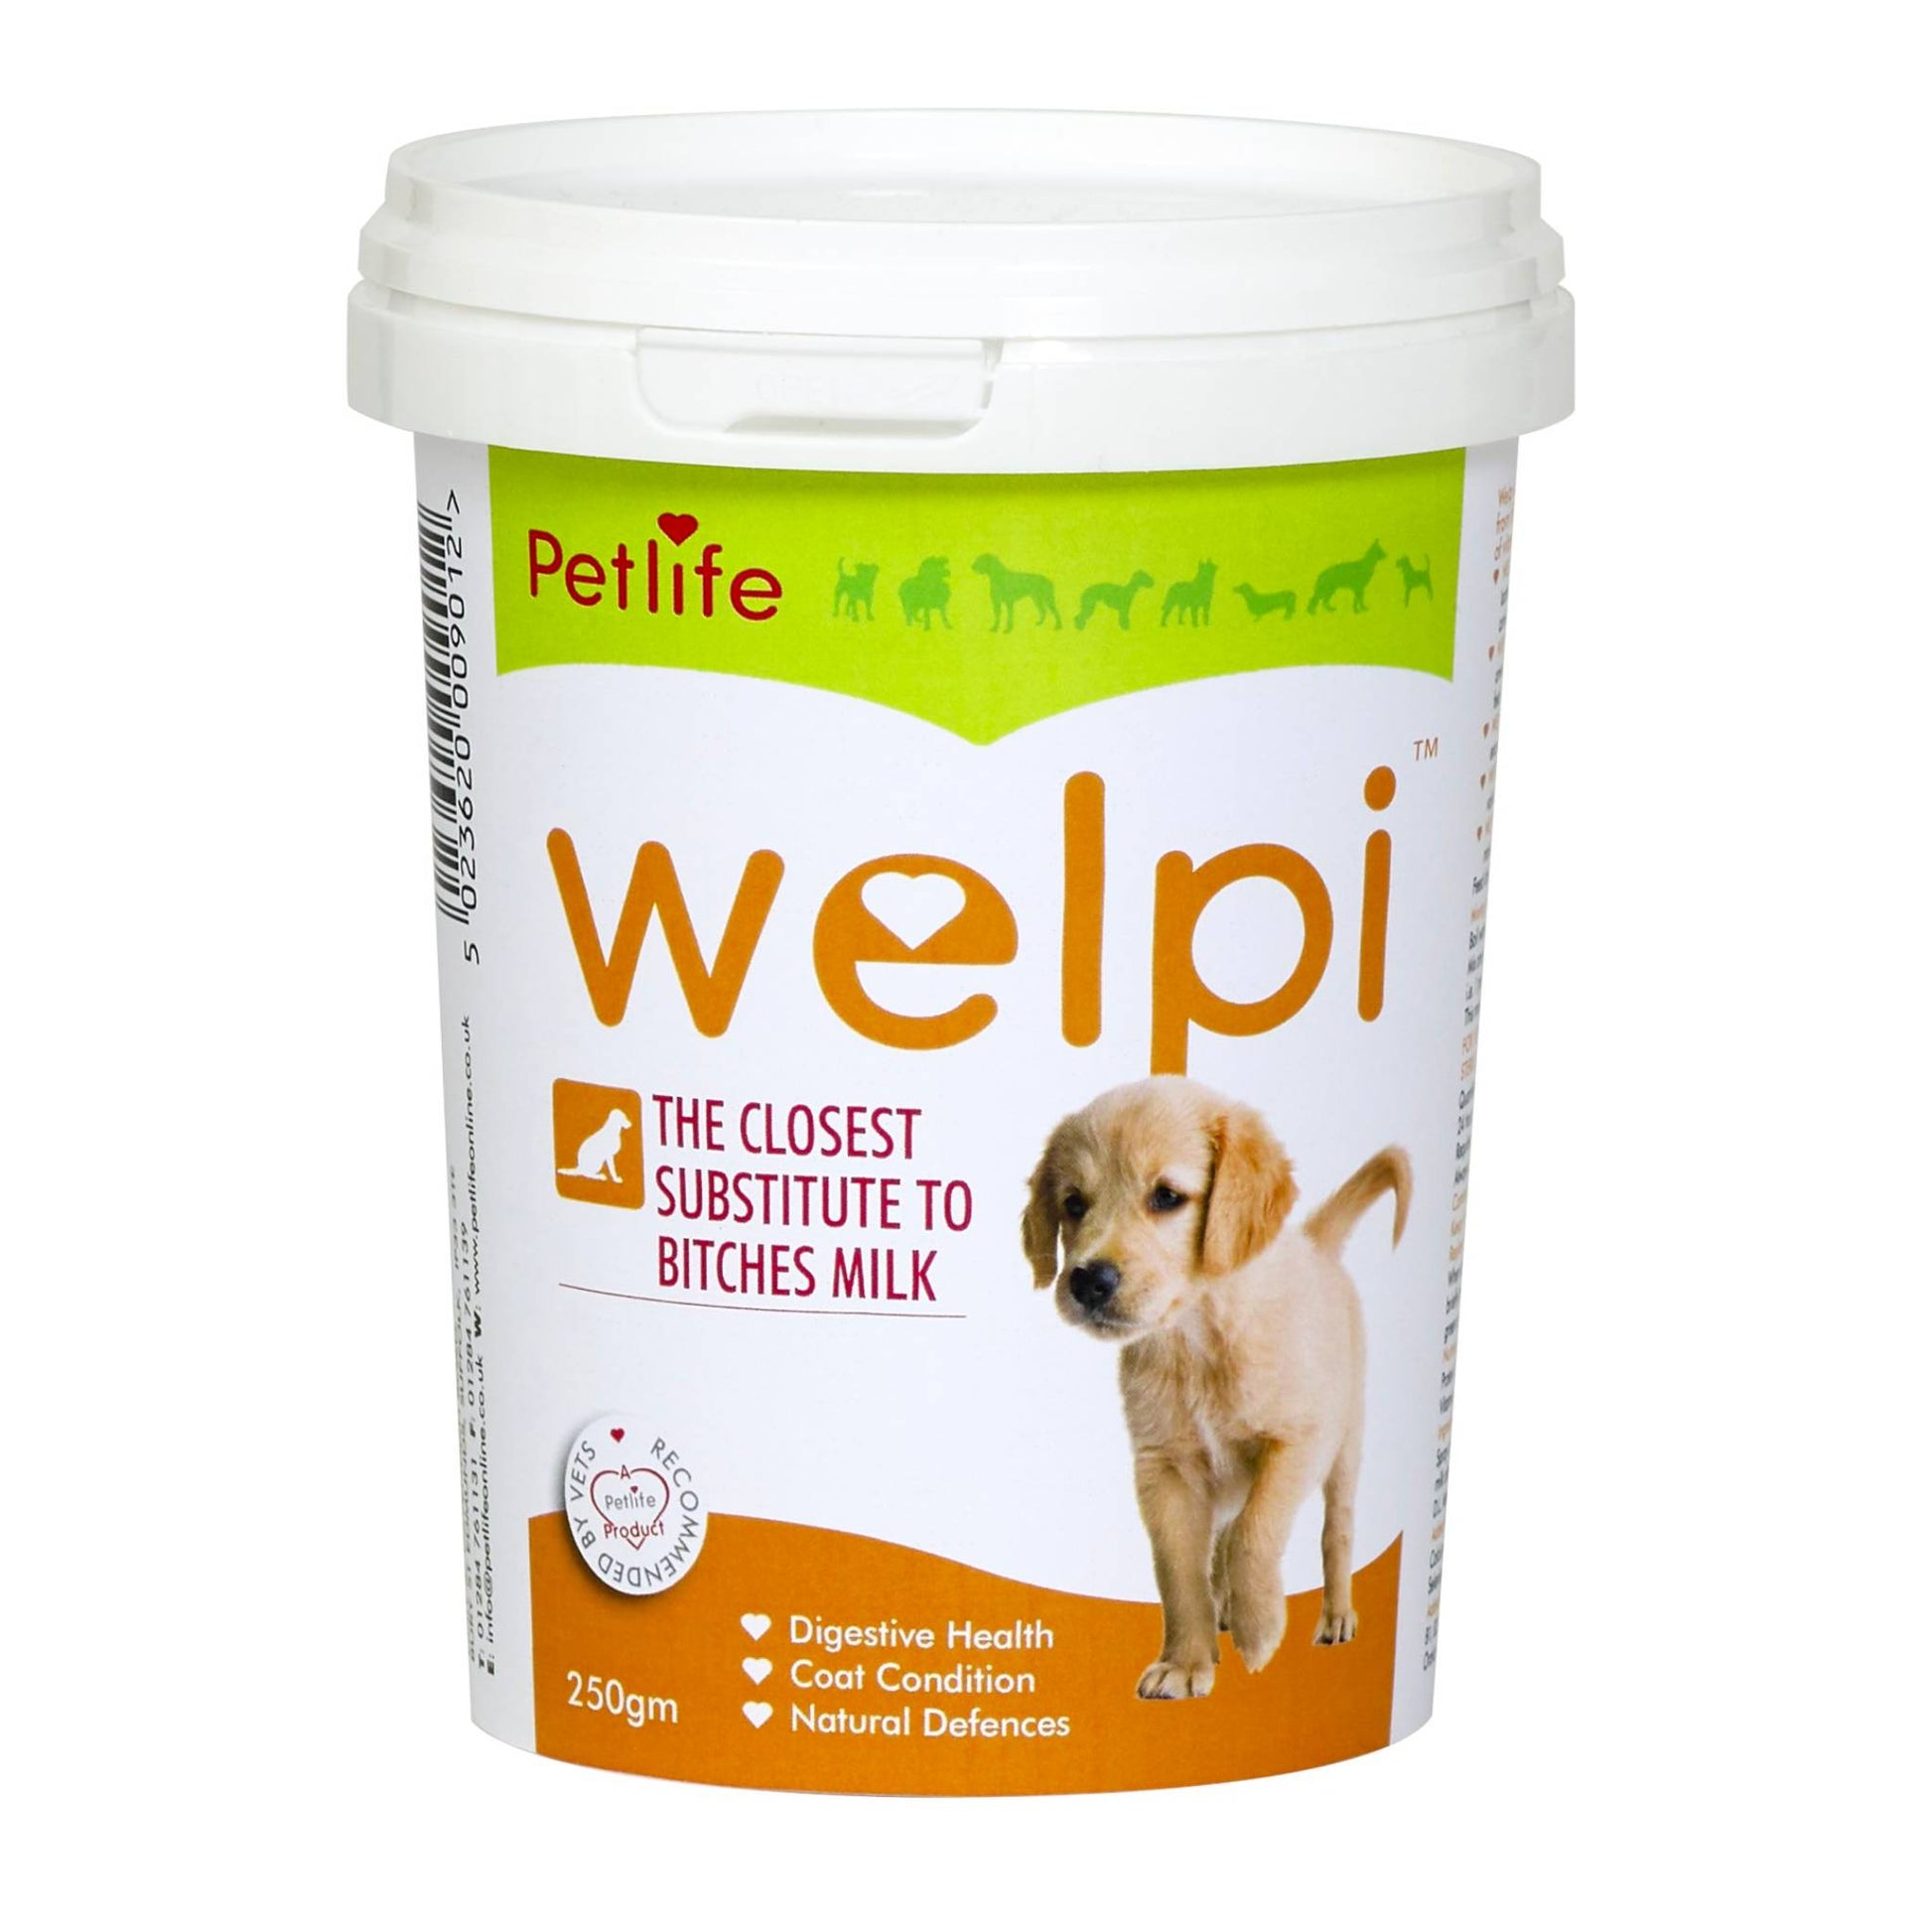 tub of welpi puppy milk